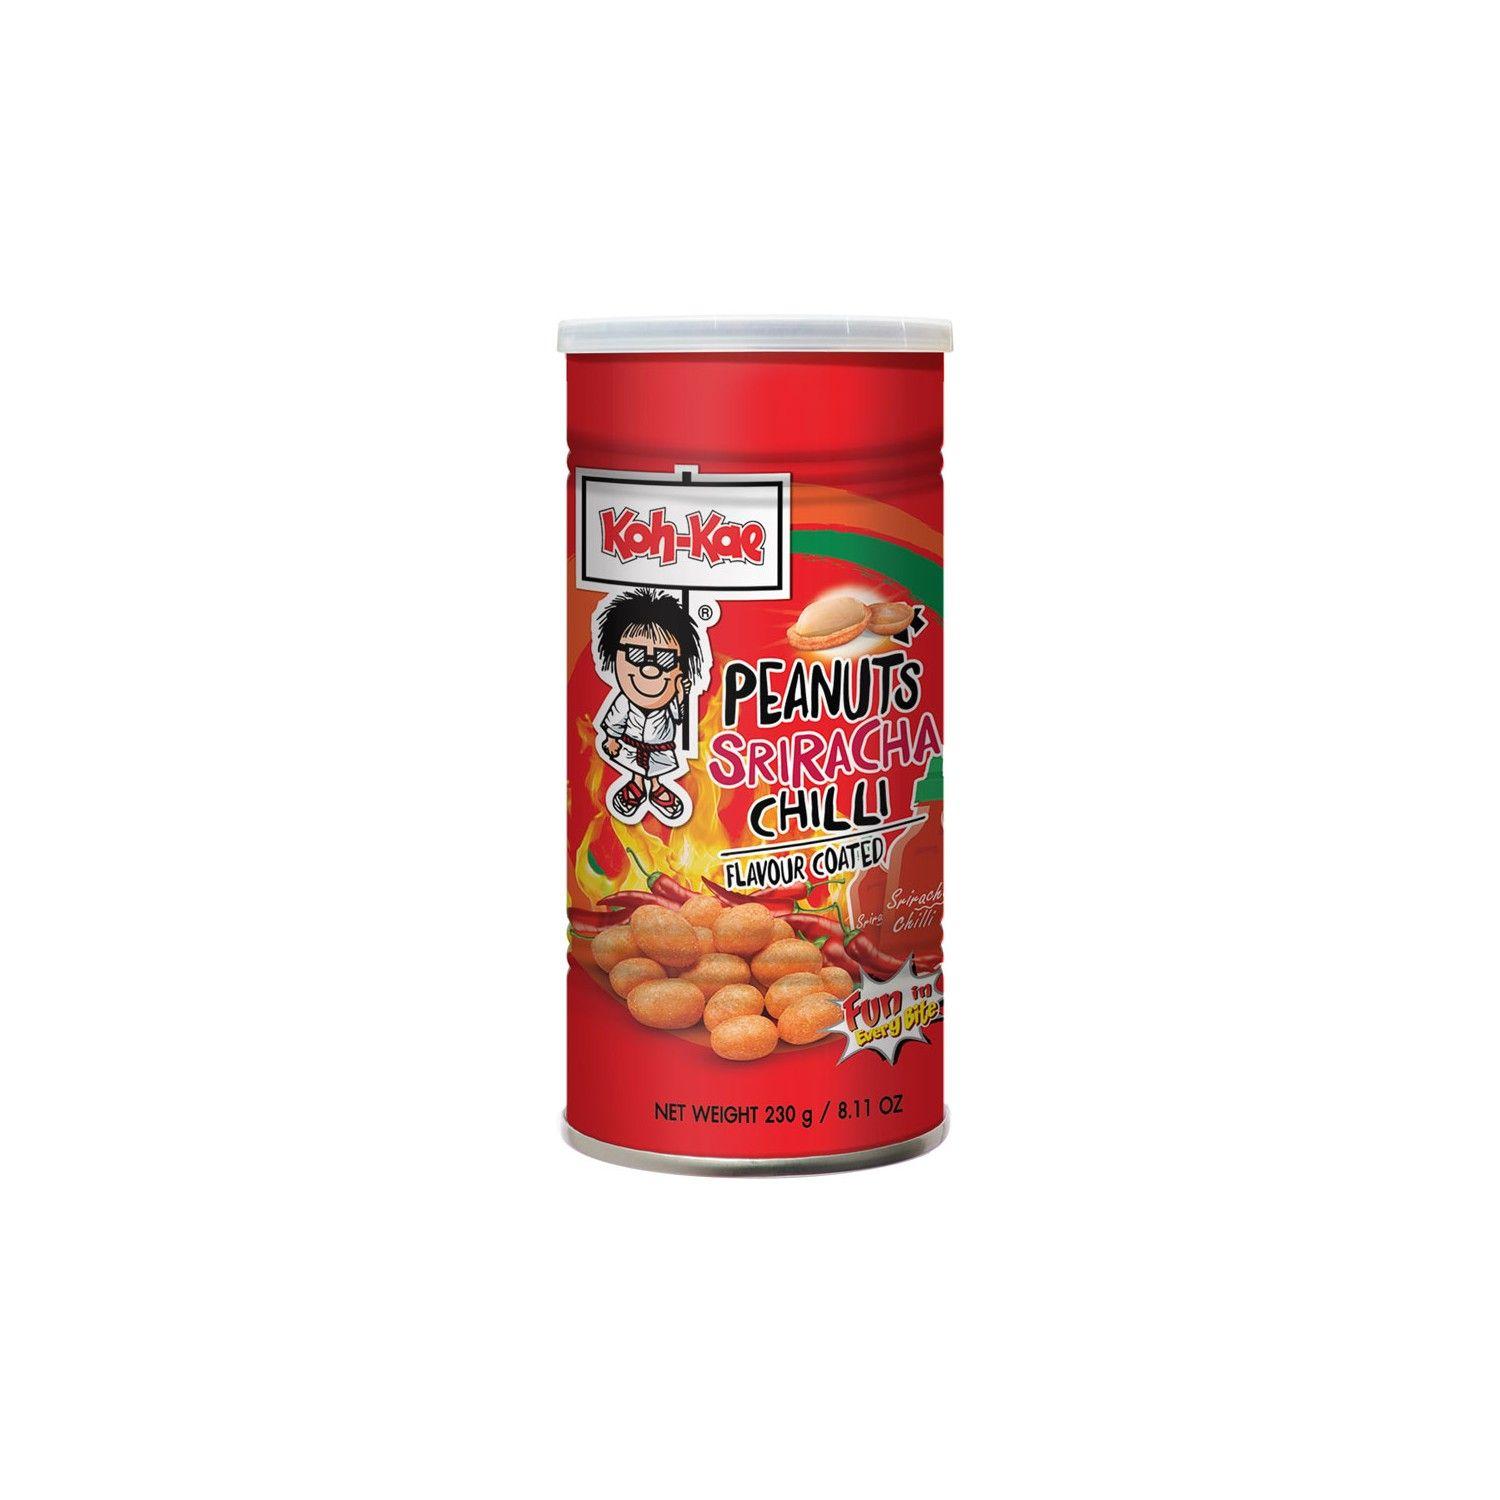 Koh-Kae Logo - Koh Kae Snacks (大哥 椰漿味花生豆) Peanuts Cream Flavour Coated Snack